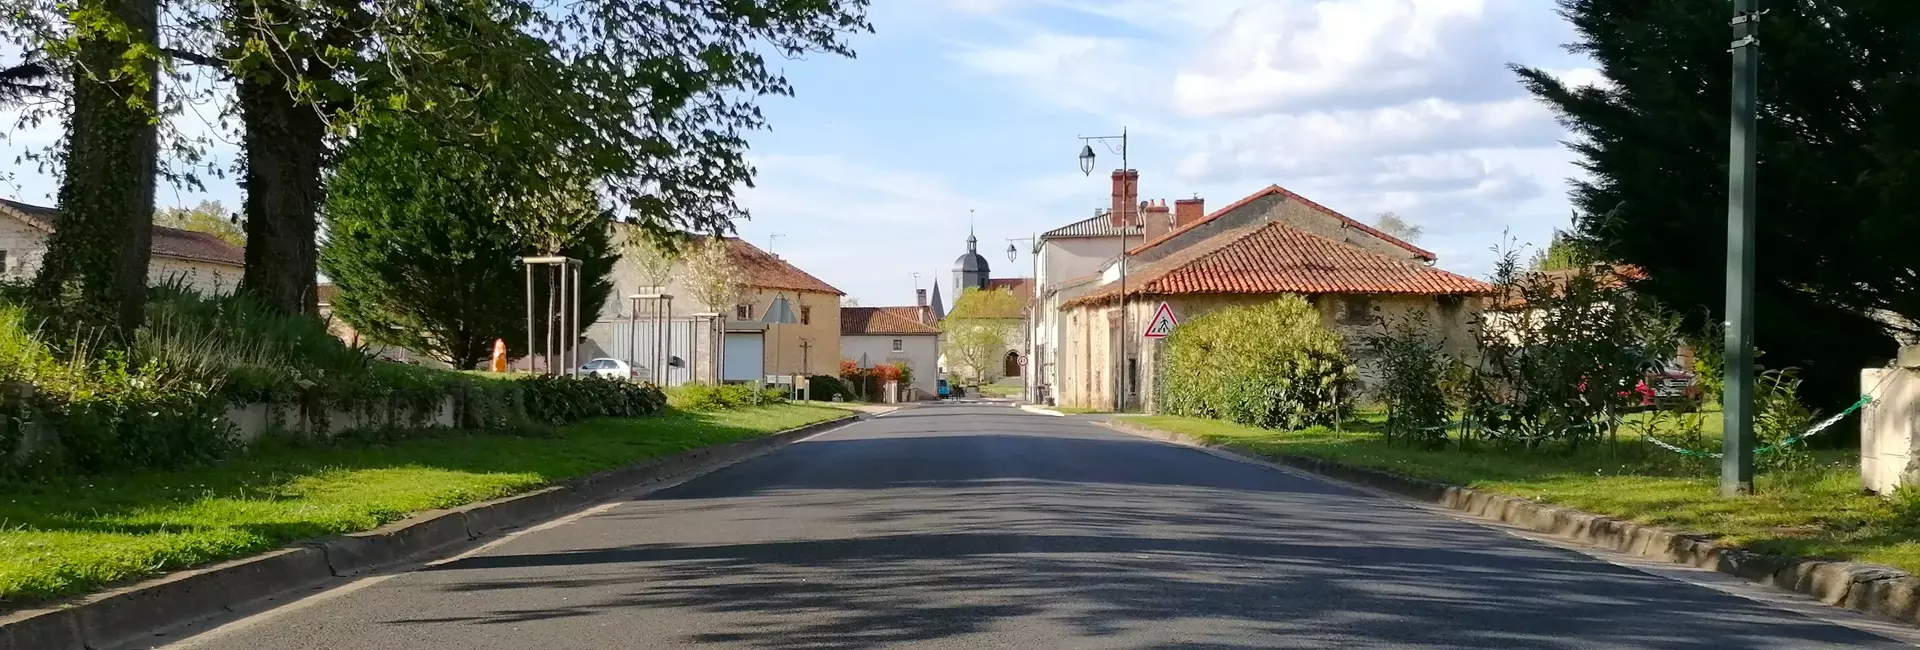 Les hébergements & restaurants de la commune de Saint-Martial-sur-Isop (87) Haute vienne